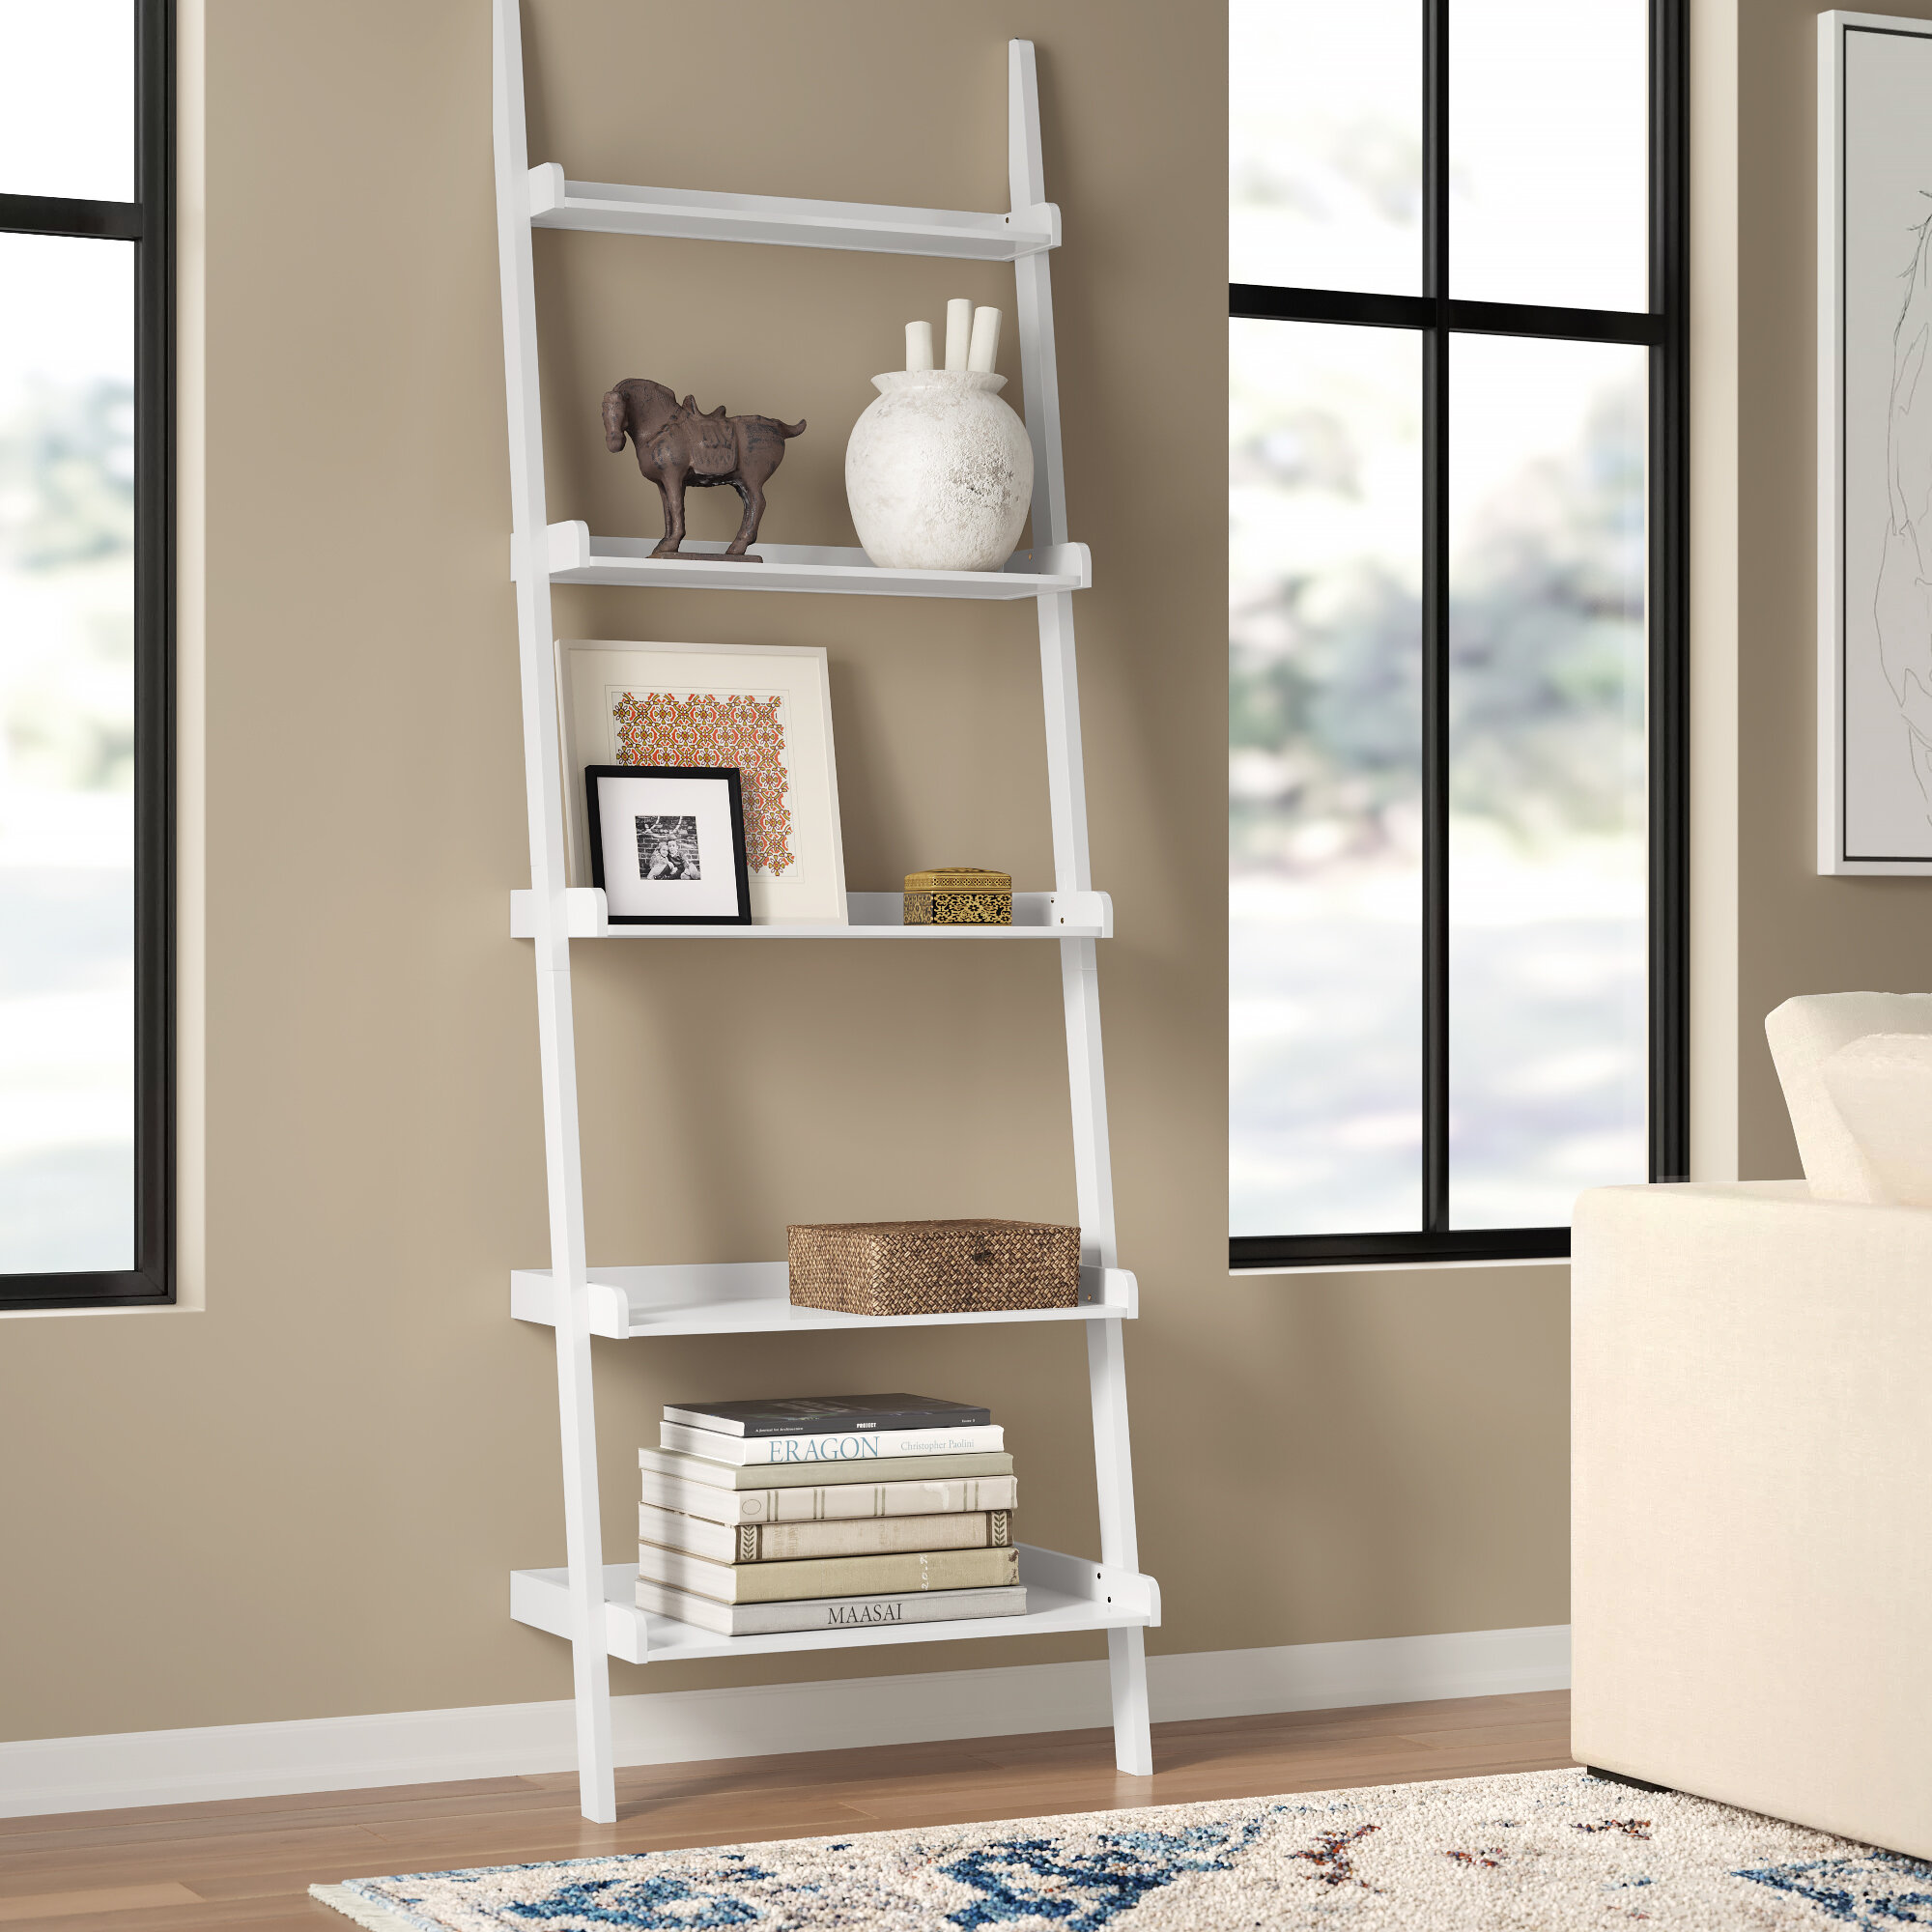 Bookshelf for Bedroom,Modern Bookshelf Bookshelf White Ladder Shelf,White Bookshelf 4 Tier Small Bookshelf,Ladder Shelf Bookcase,Tall Bookshelf,Leaning Bookshelf,Skinny Bookshelf